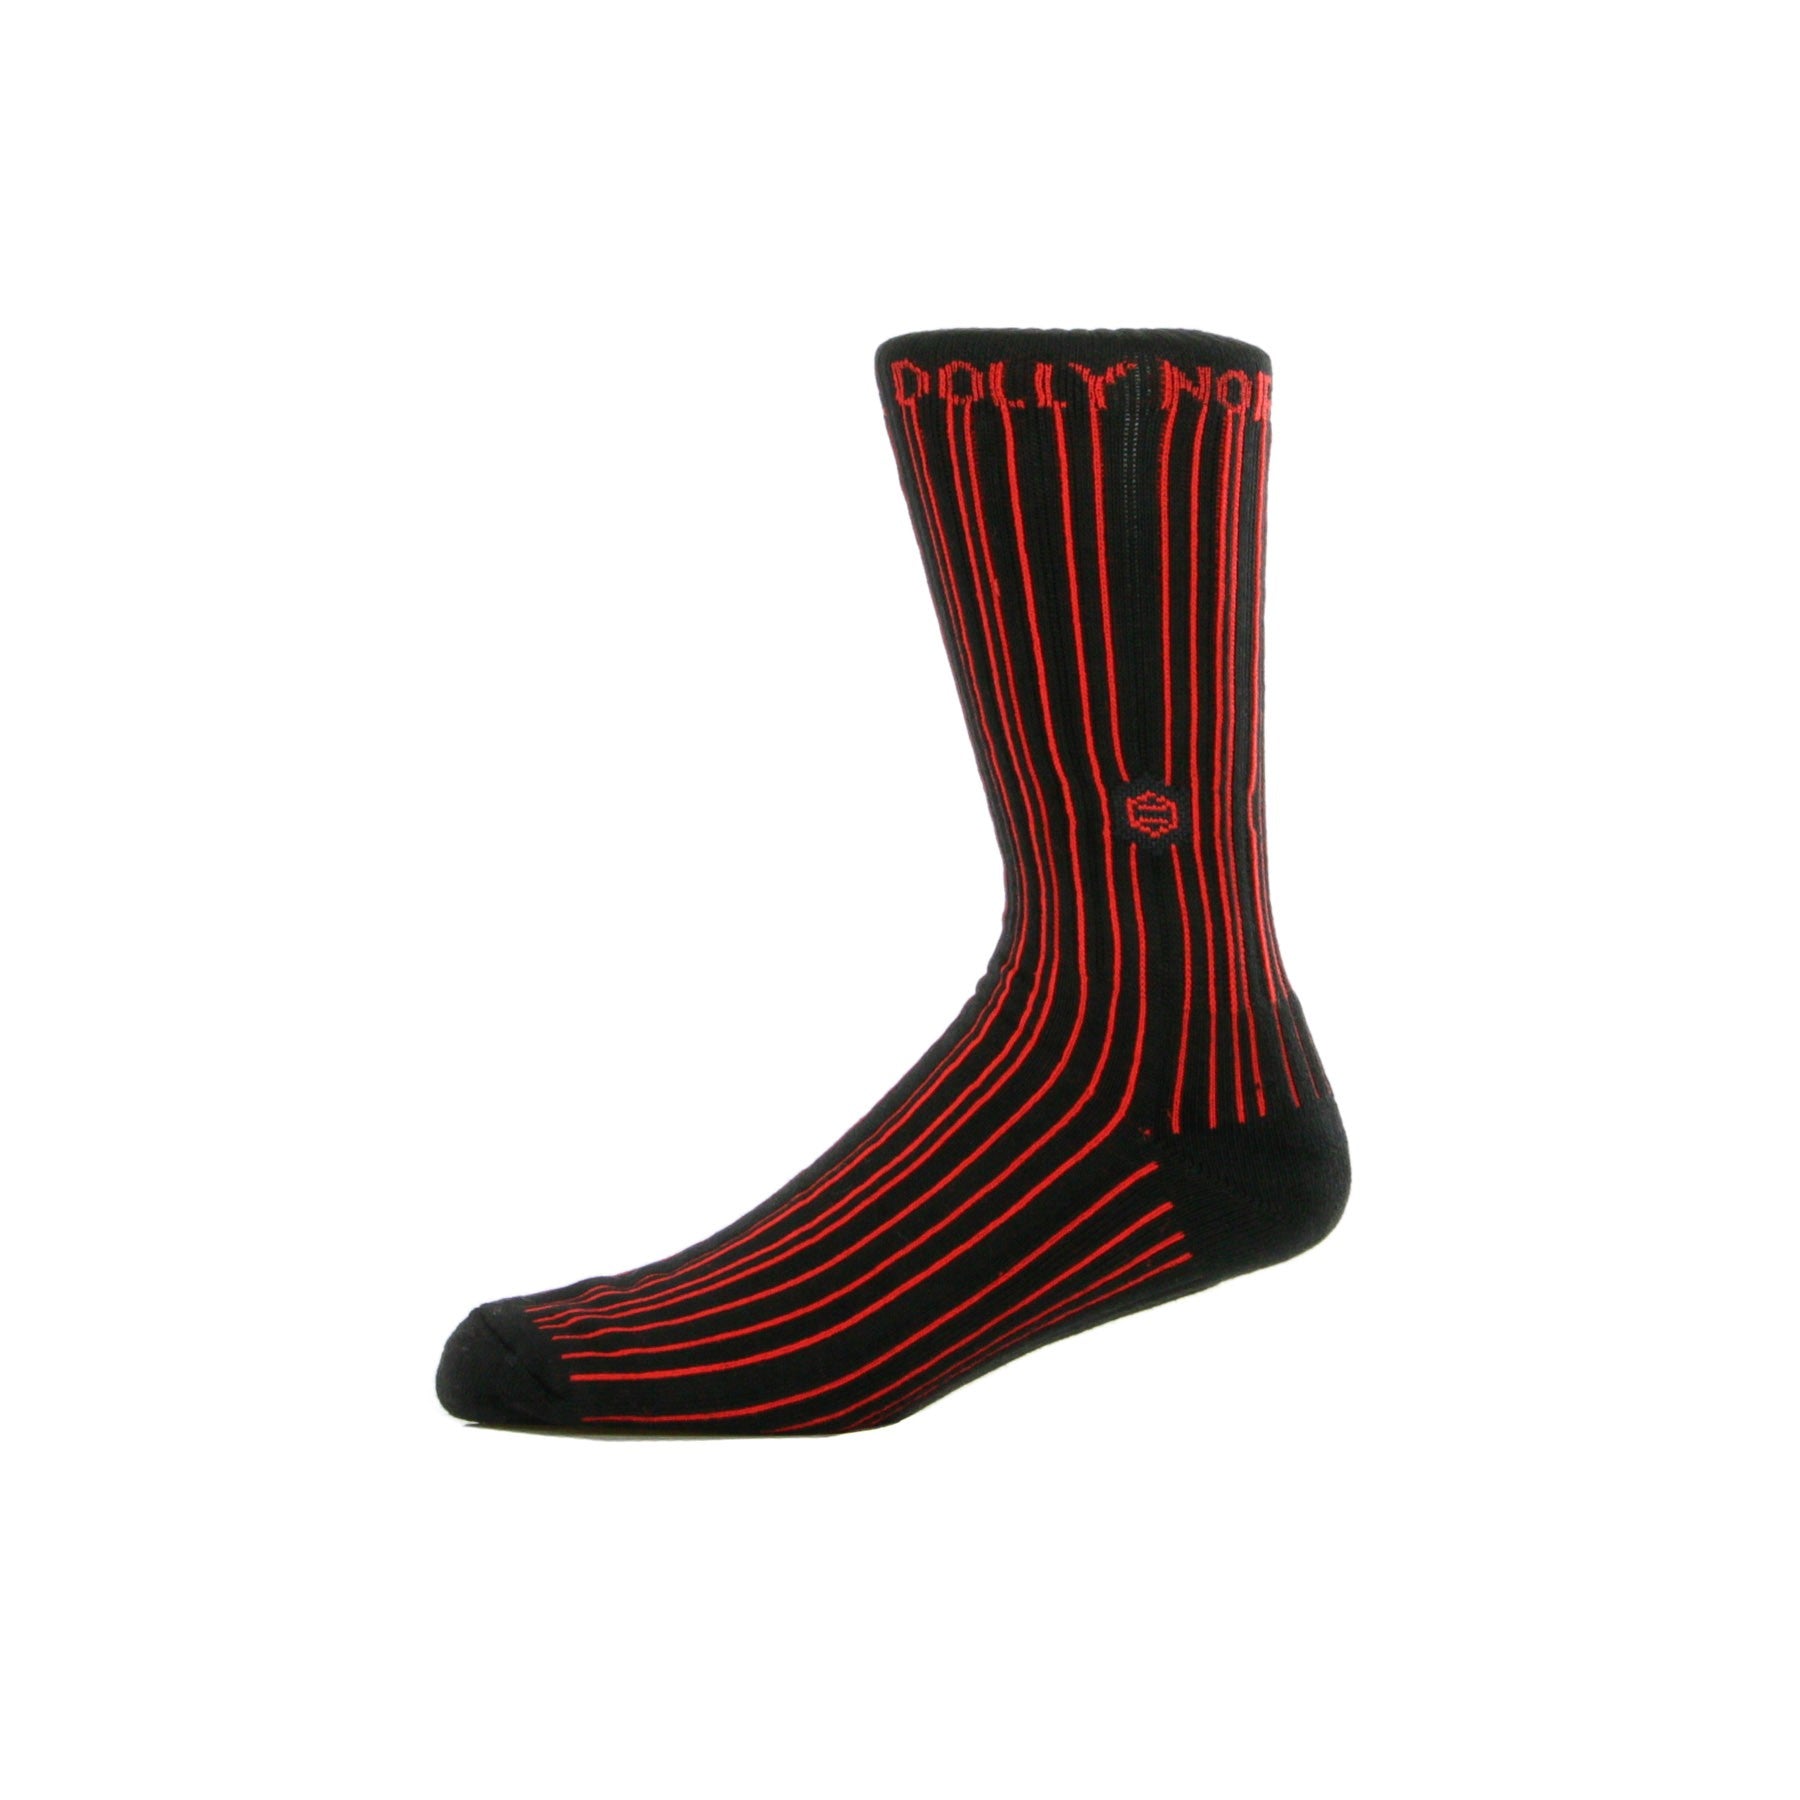 Dolly Noire, Calza Media Uomo Socks Control Br, Black/red